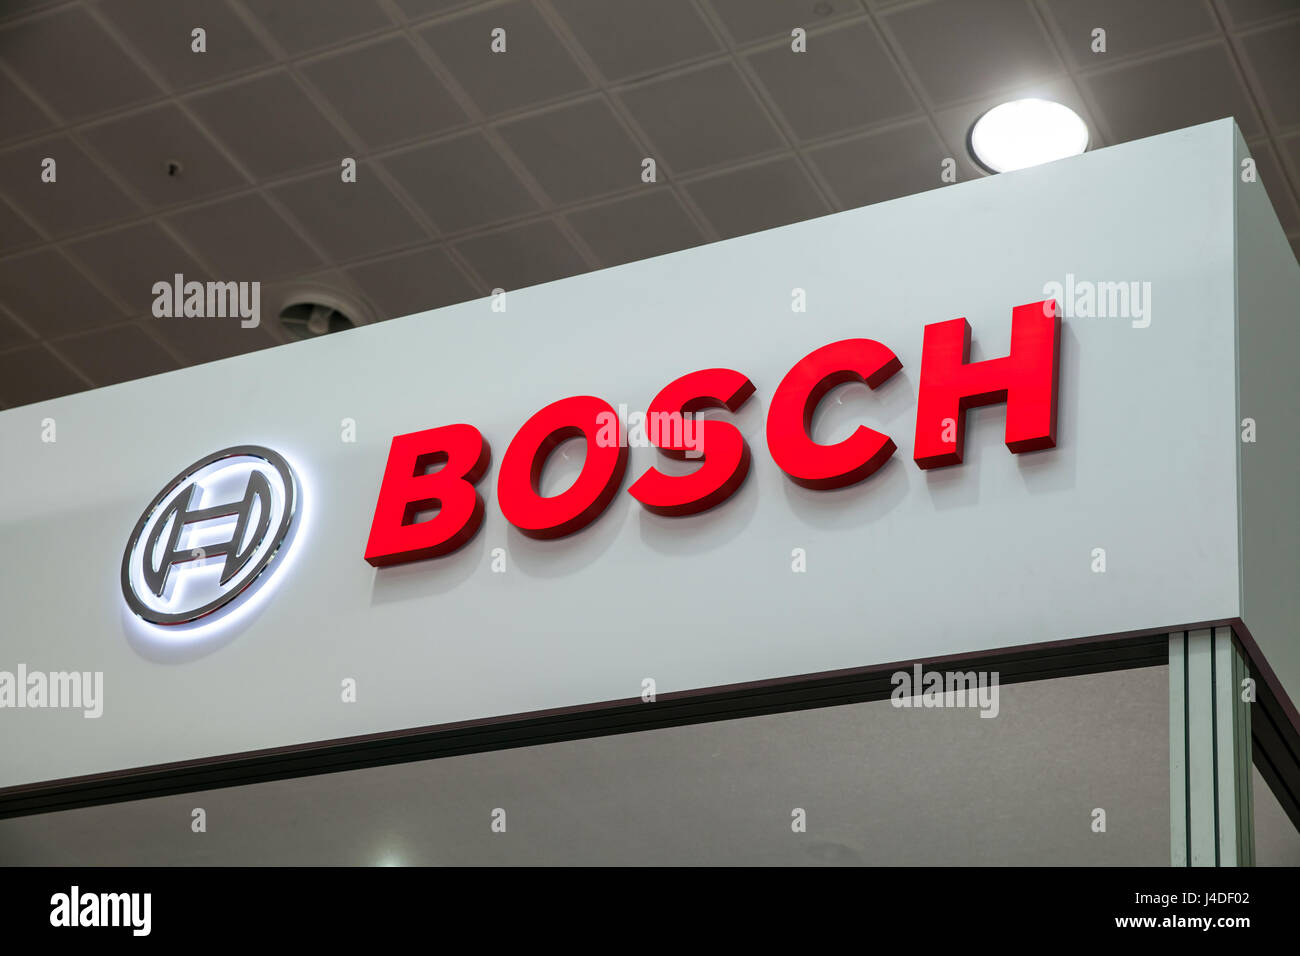 Logo de l'entreprise Bosch sur le mur. Bosch est une multinationale allemande d'électronique et d'ingénierie Banque D'Images